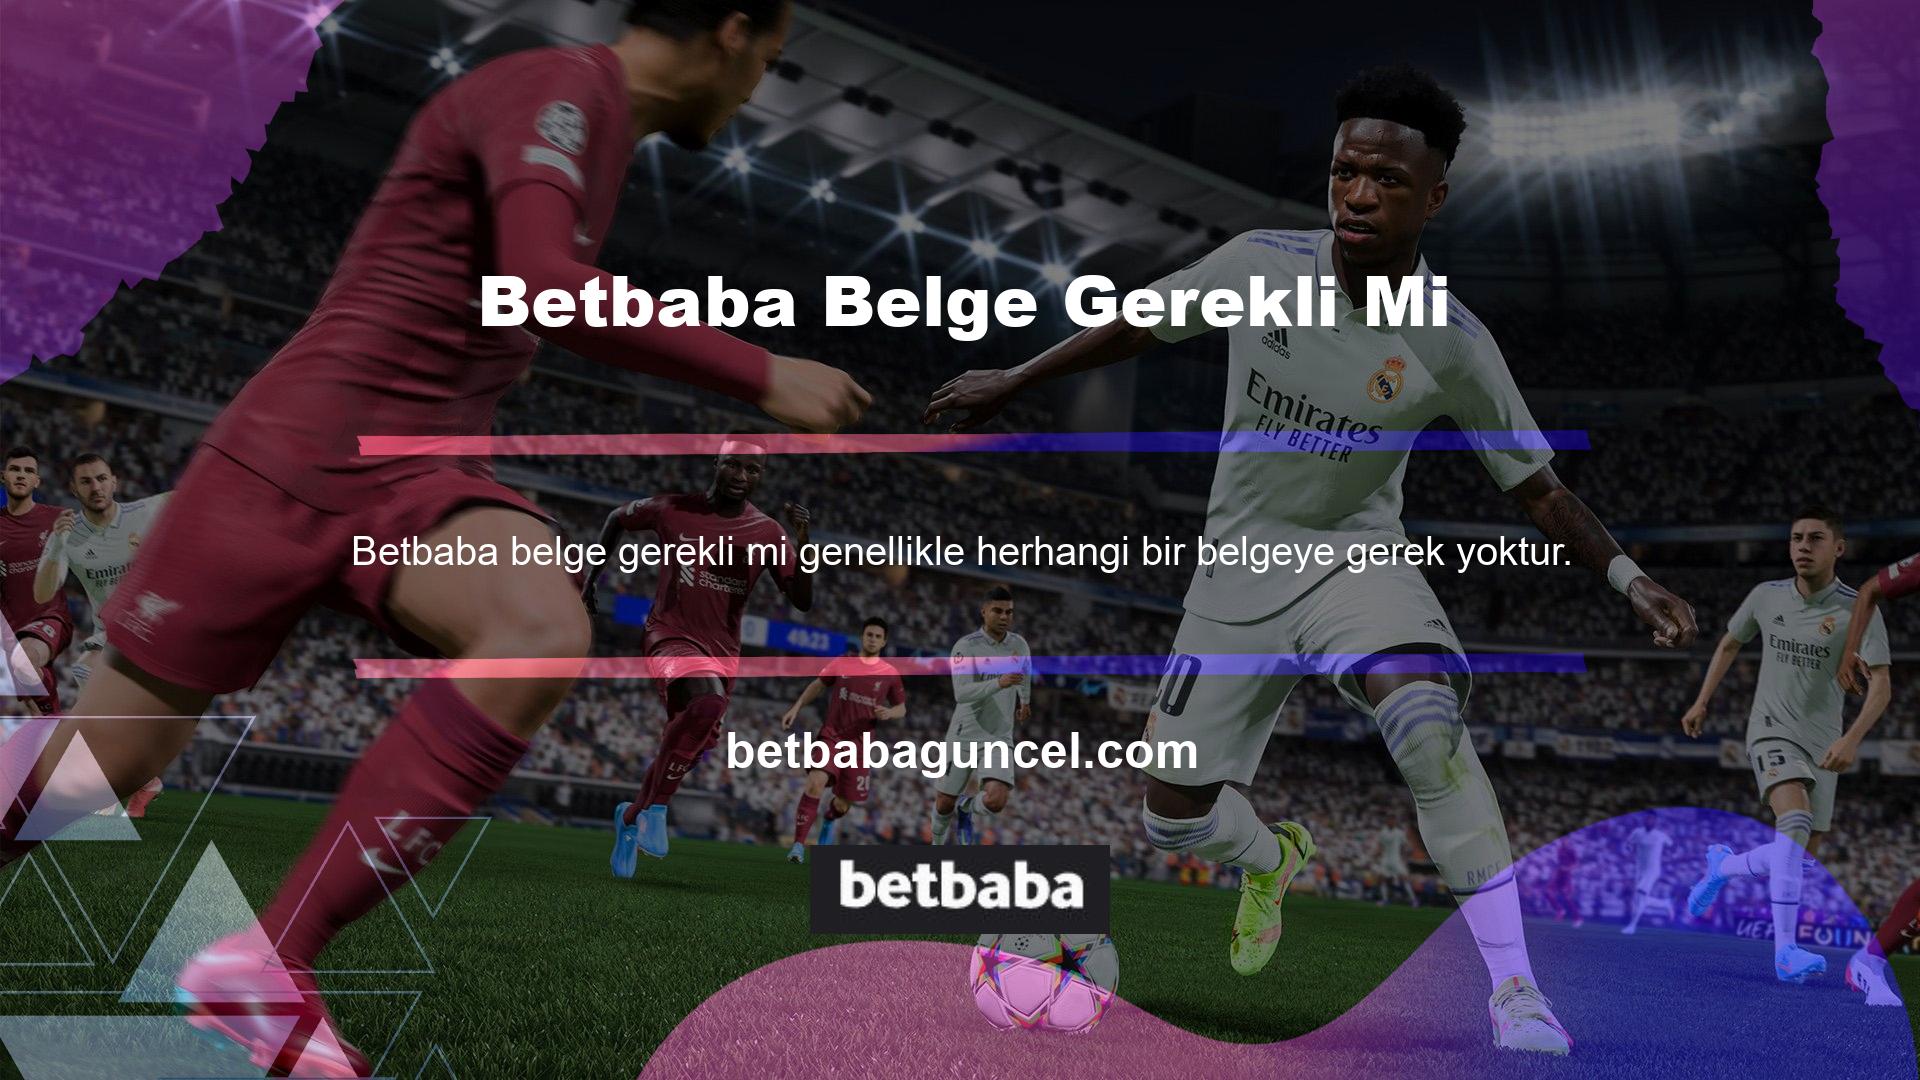 Bu siteye üye olmak Betbaba belge casino seçenekleri ve casino oyunları sunmaktadır